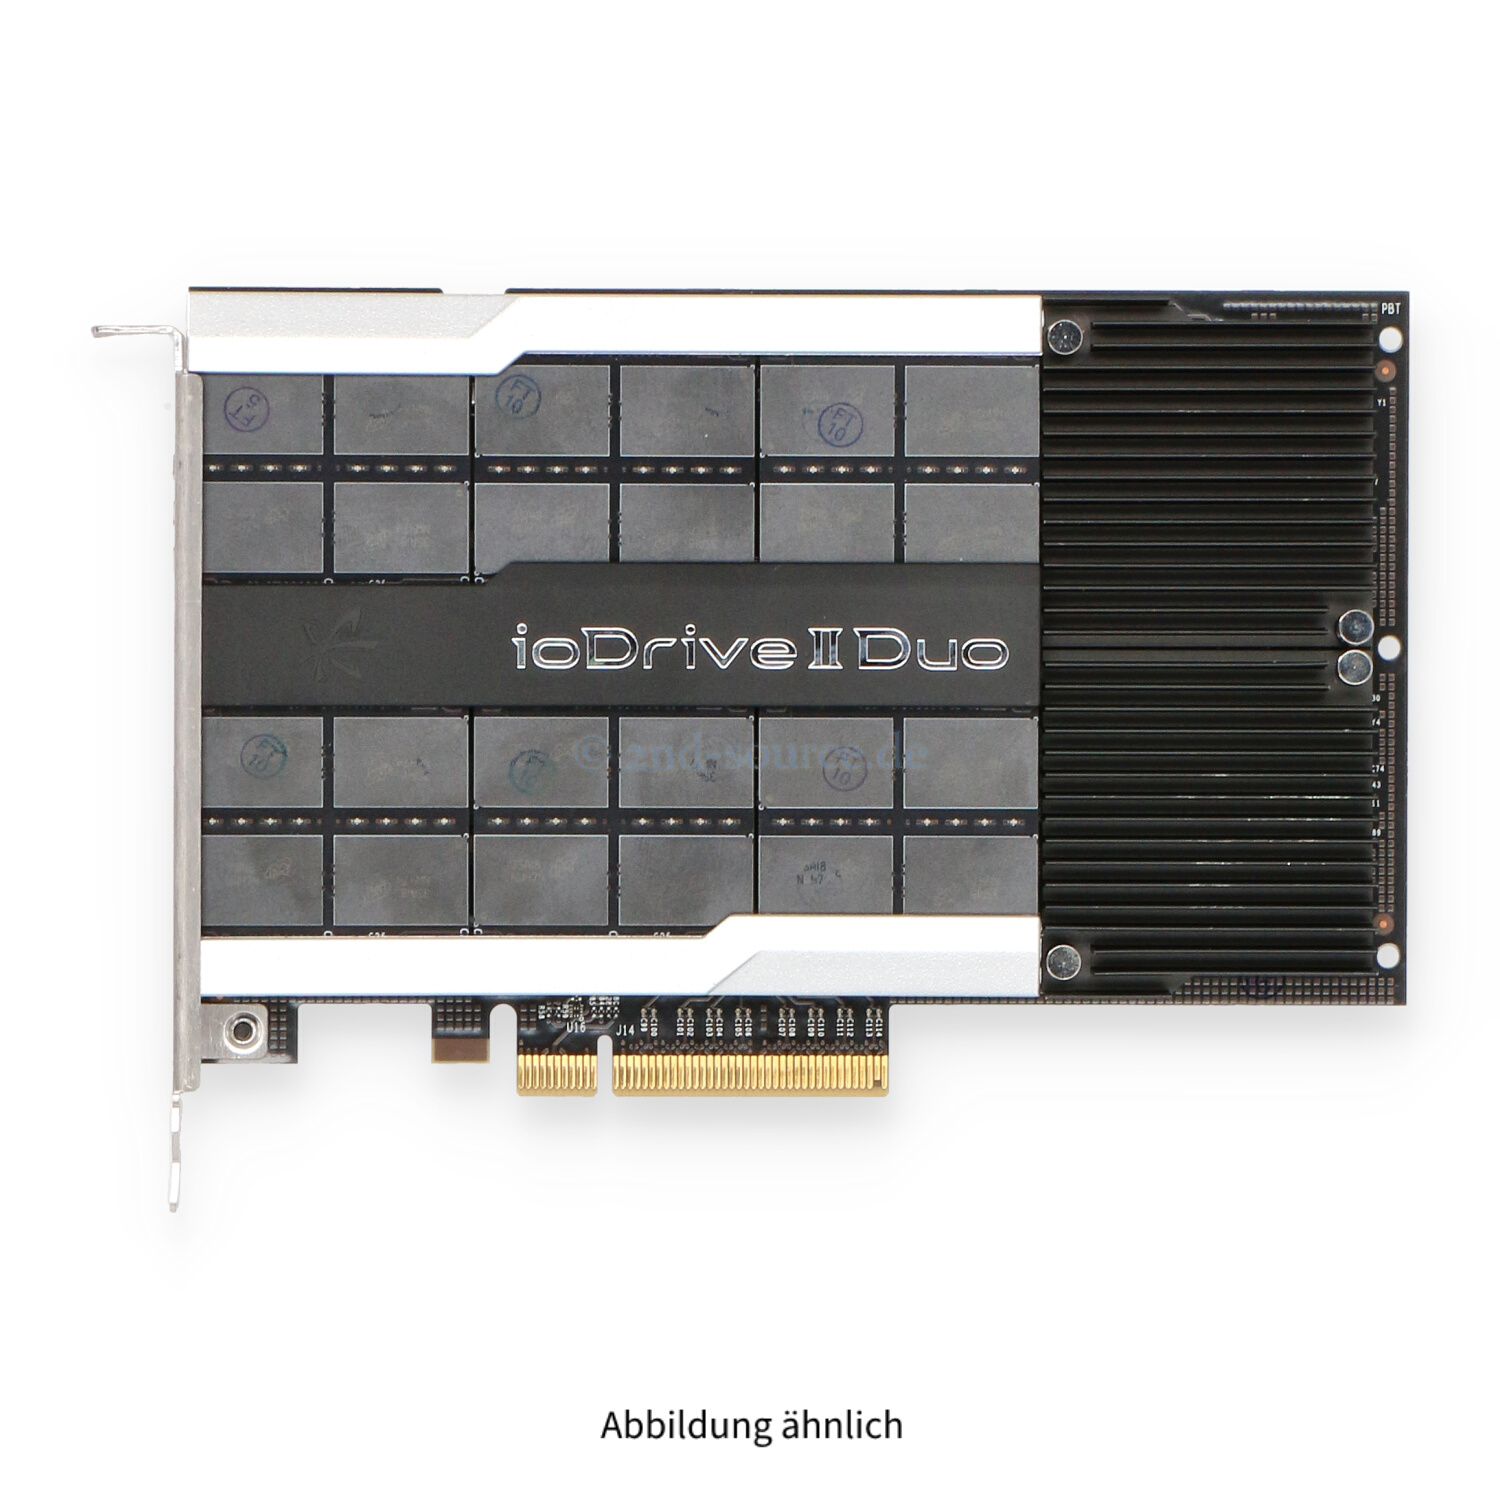 Dell ioDrive II Duo 2.4TB MLC PCIe 2.0 x8 High Profile SSD 7F6JV 07F6JV F4K5G 0F4K5G